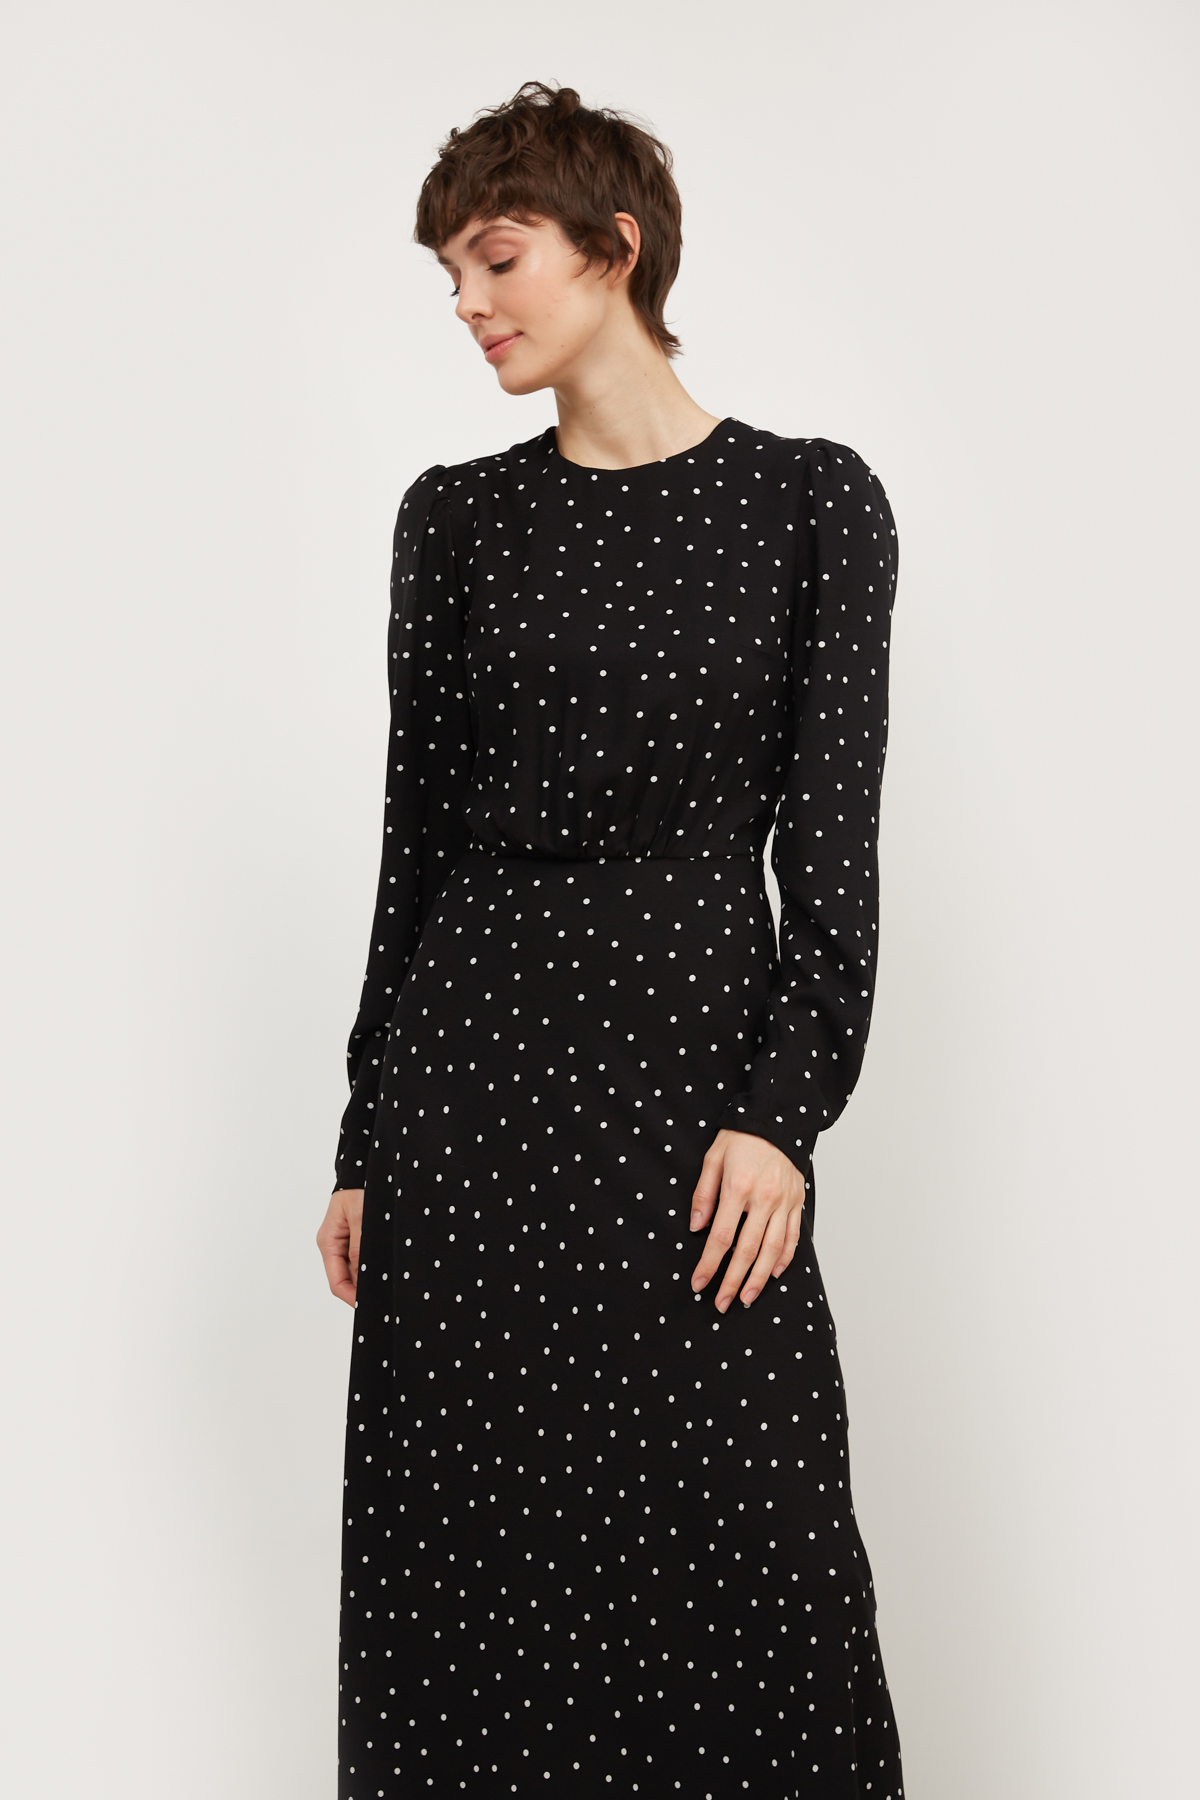 Black viscose midi dress in white polka dots print, photo 3